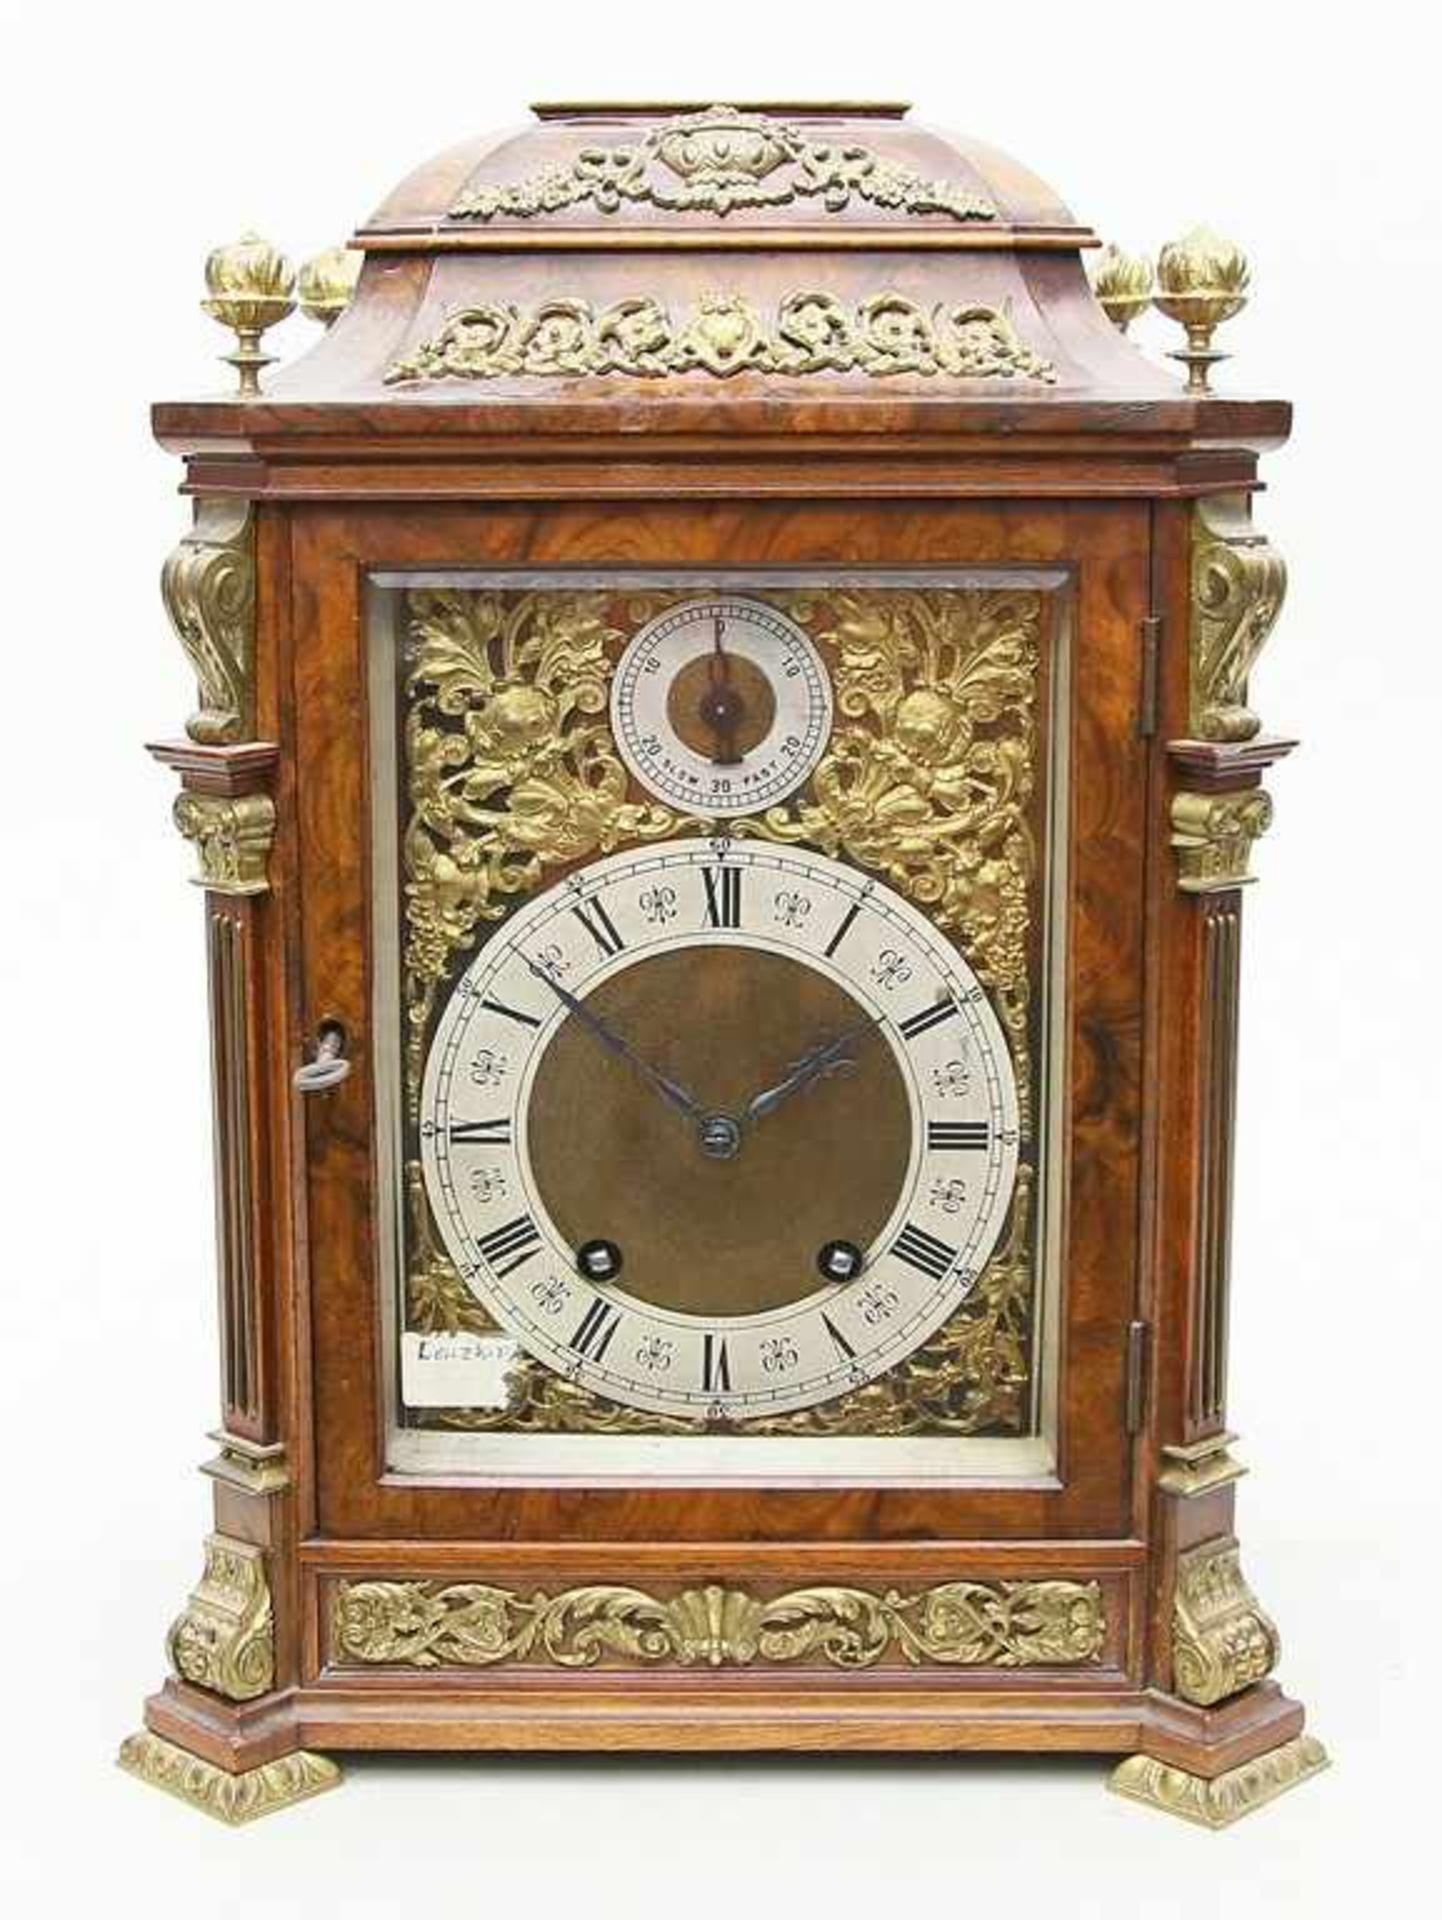 Stockuhr - Bracket Clock "Lenzkirch".